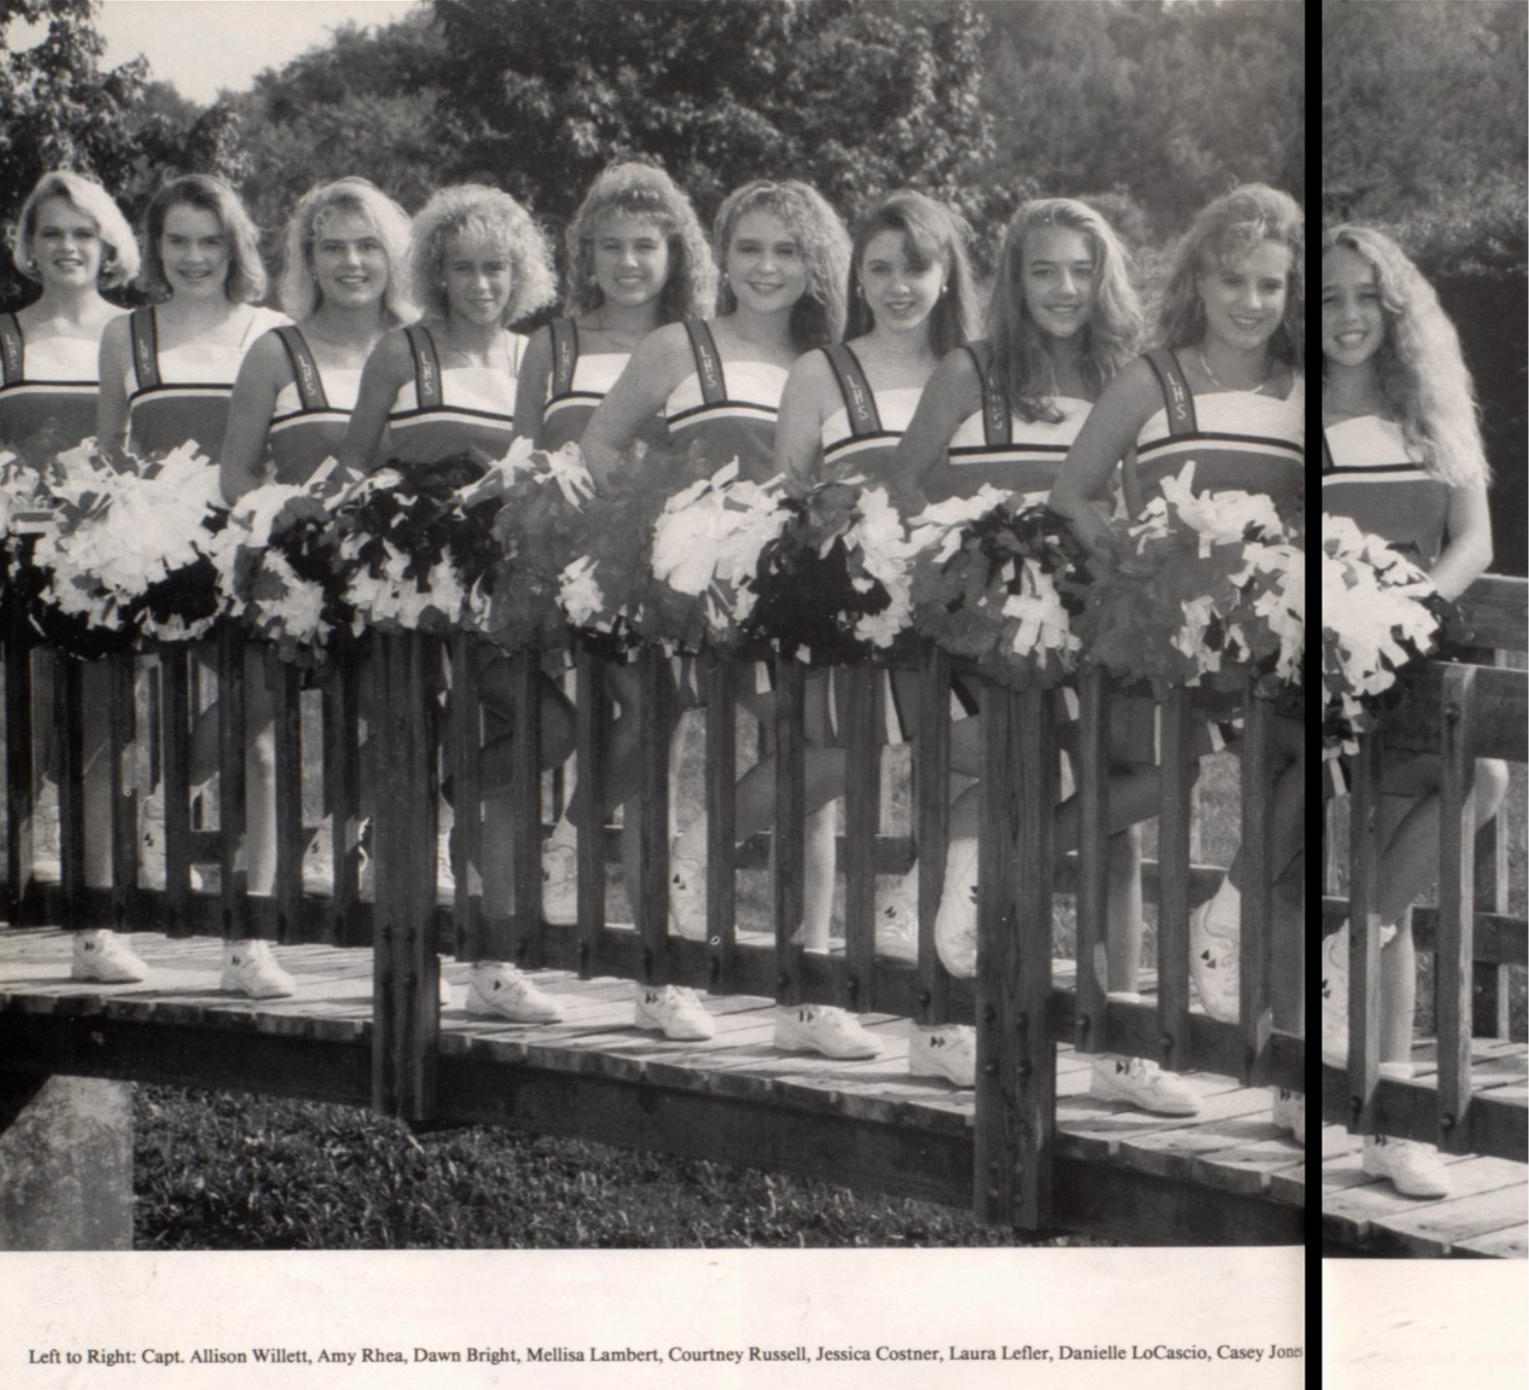 1994 Cheerleader Team